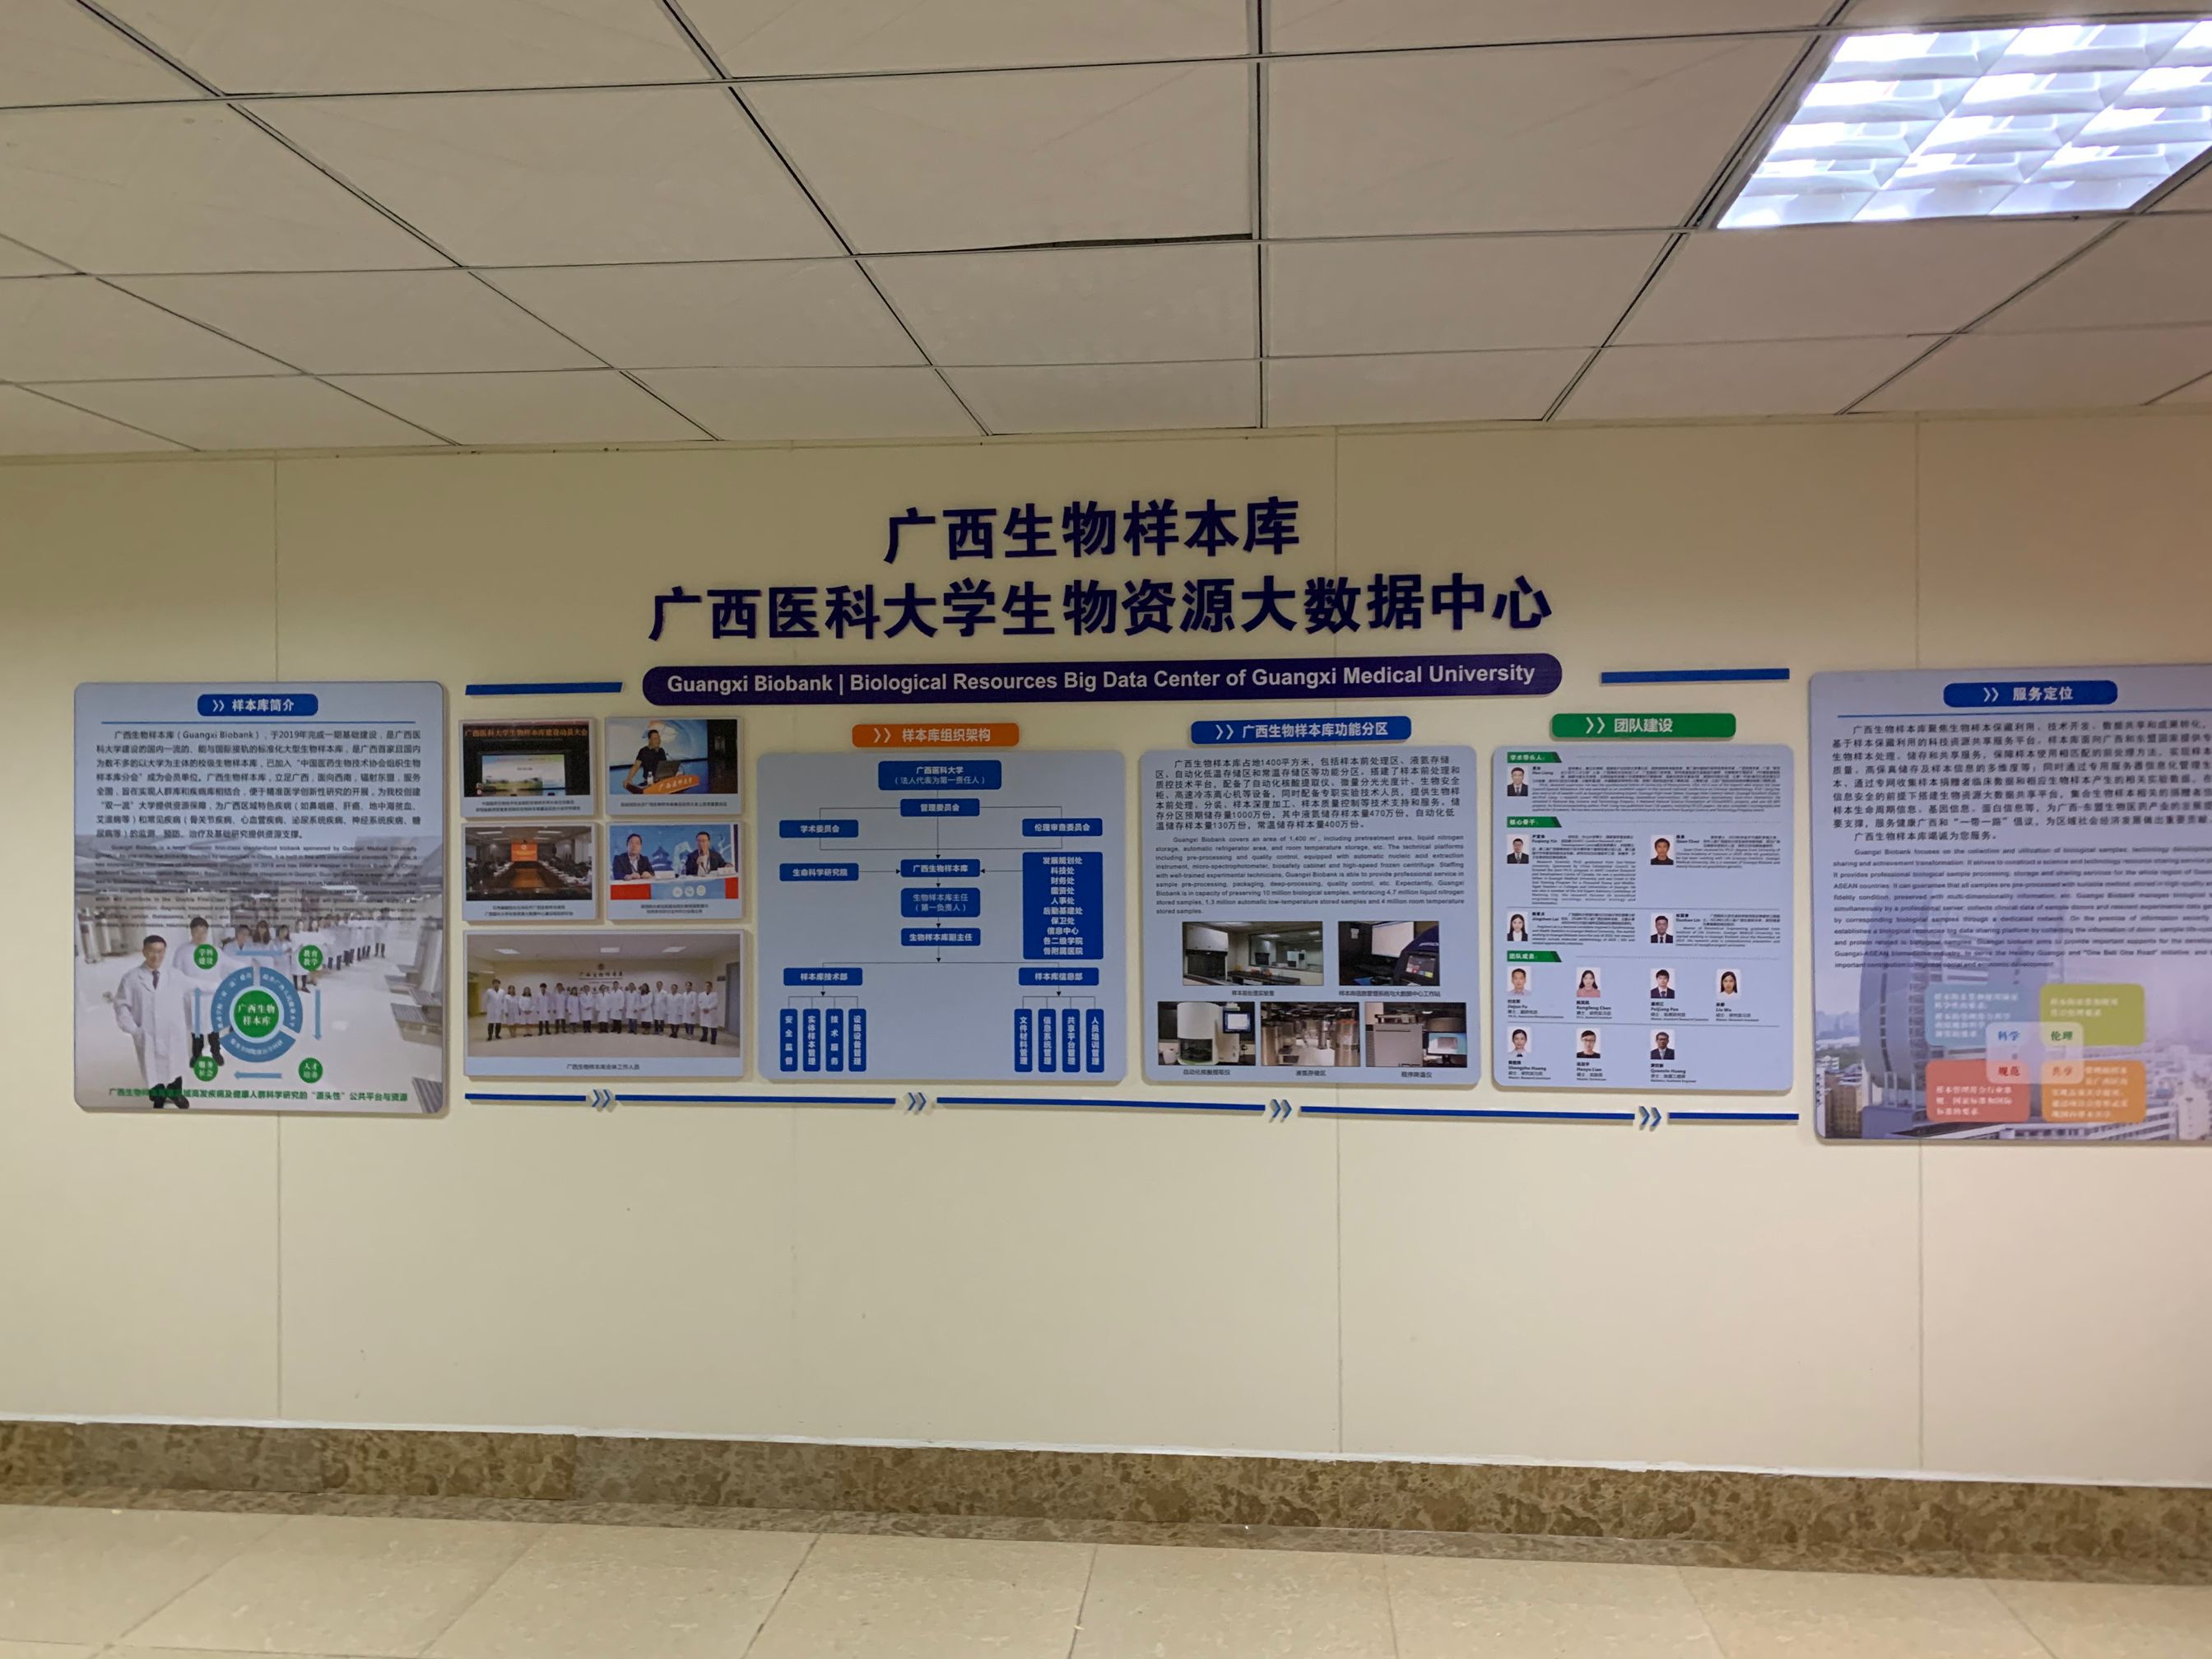 广西医科大学生物资源库大数据中心文化墙制作与效果图